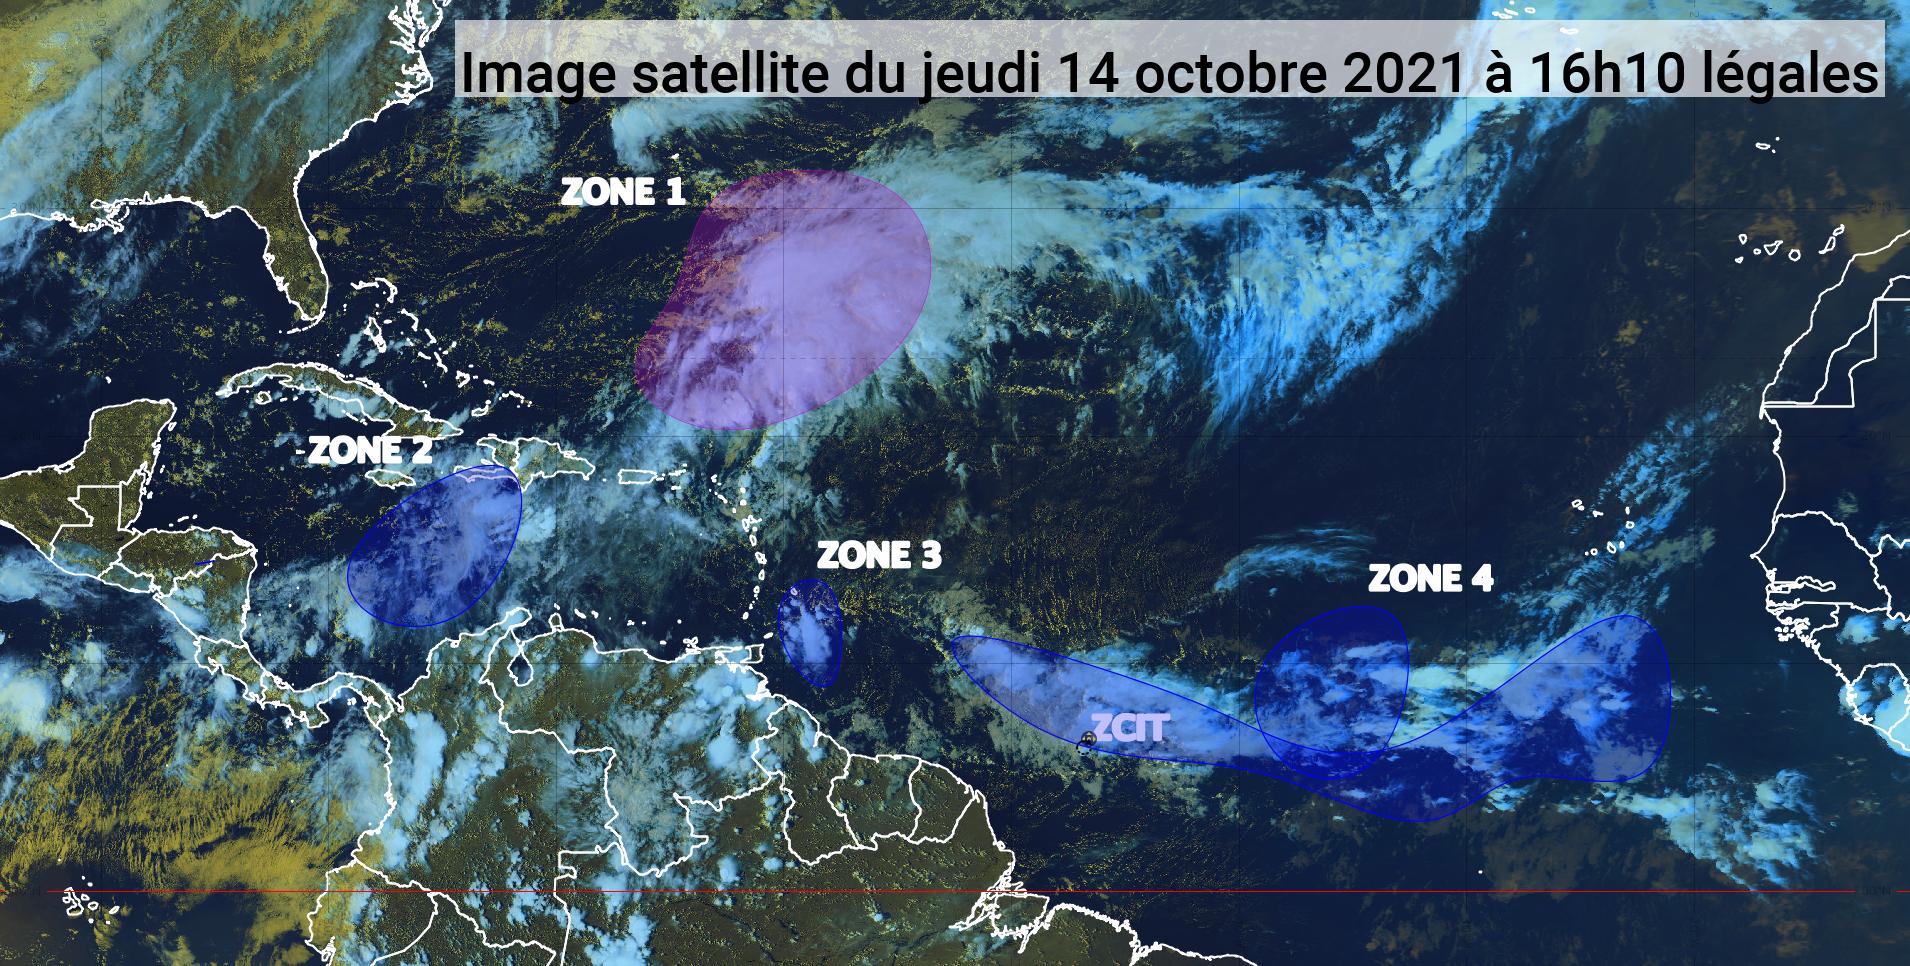     L'onde tropicale peu active devrait concerner les Petites Antilles demain soir (bulletin du 14/10/21)

